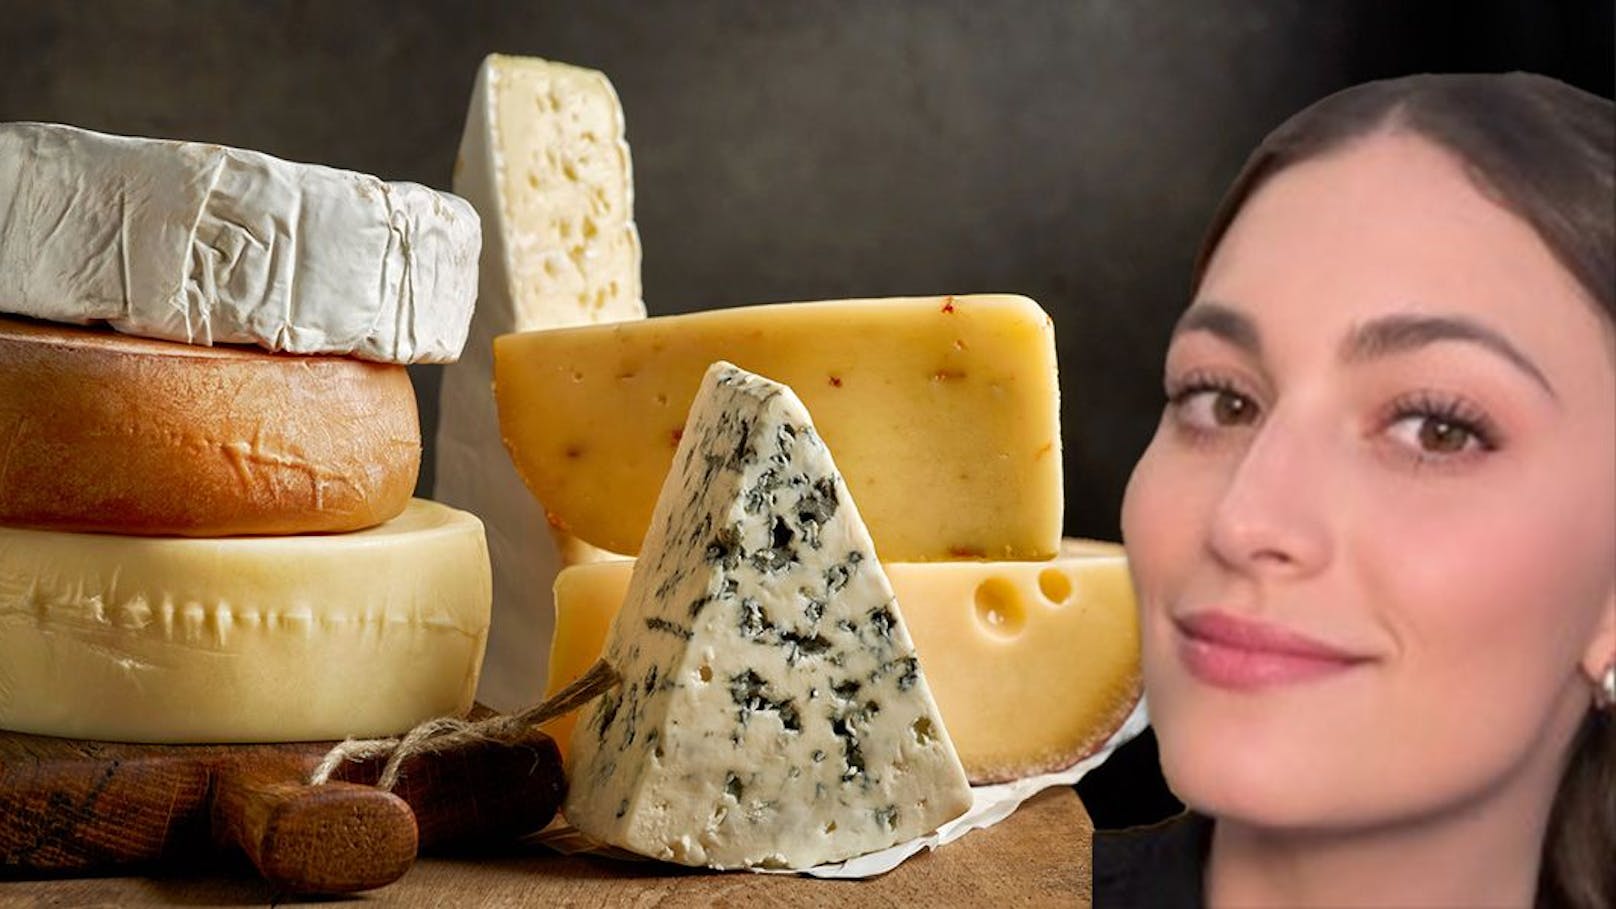 Süchtig nach Käse – Frau muss in Entzugsklinik